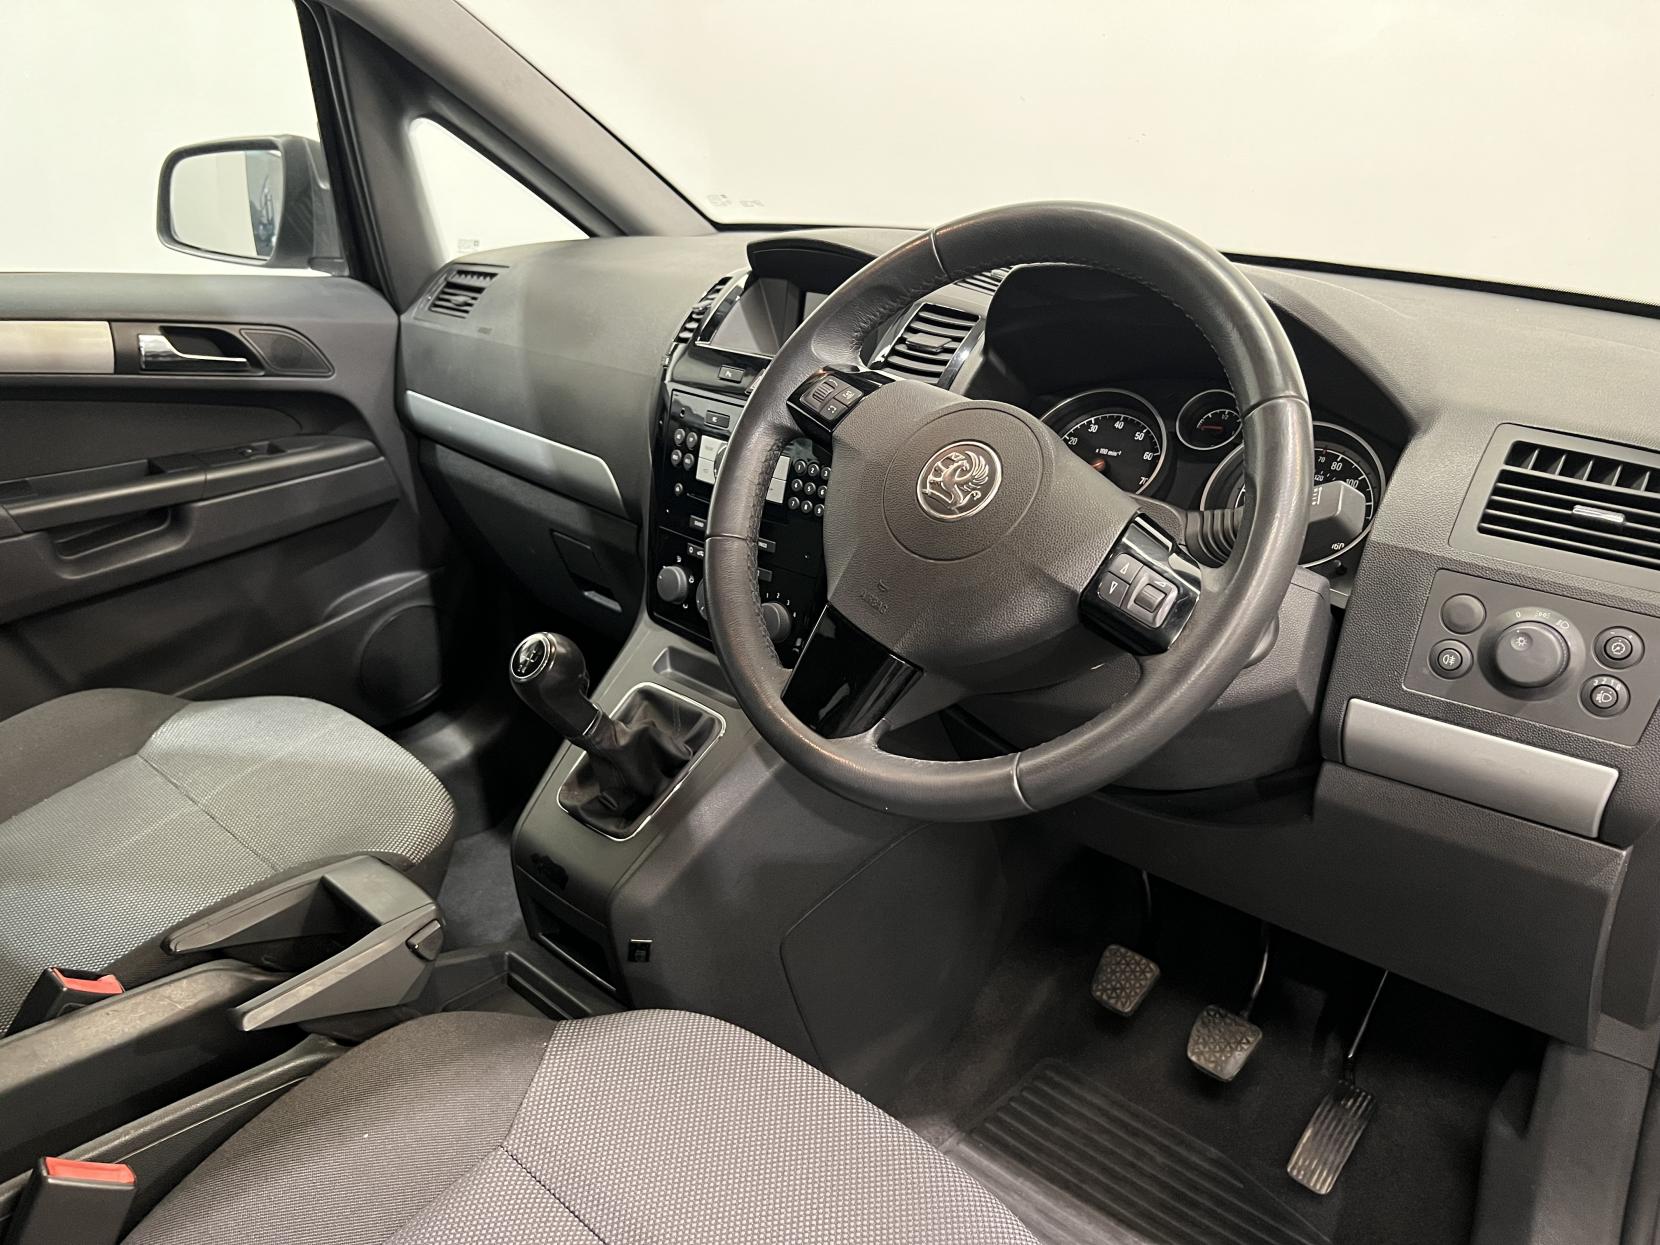 Vauxhall Zafira 1.6 16V Exclusiv MPV 5dr Petrol Manual Euro 5 (115 ps)